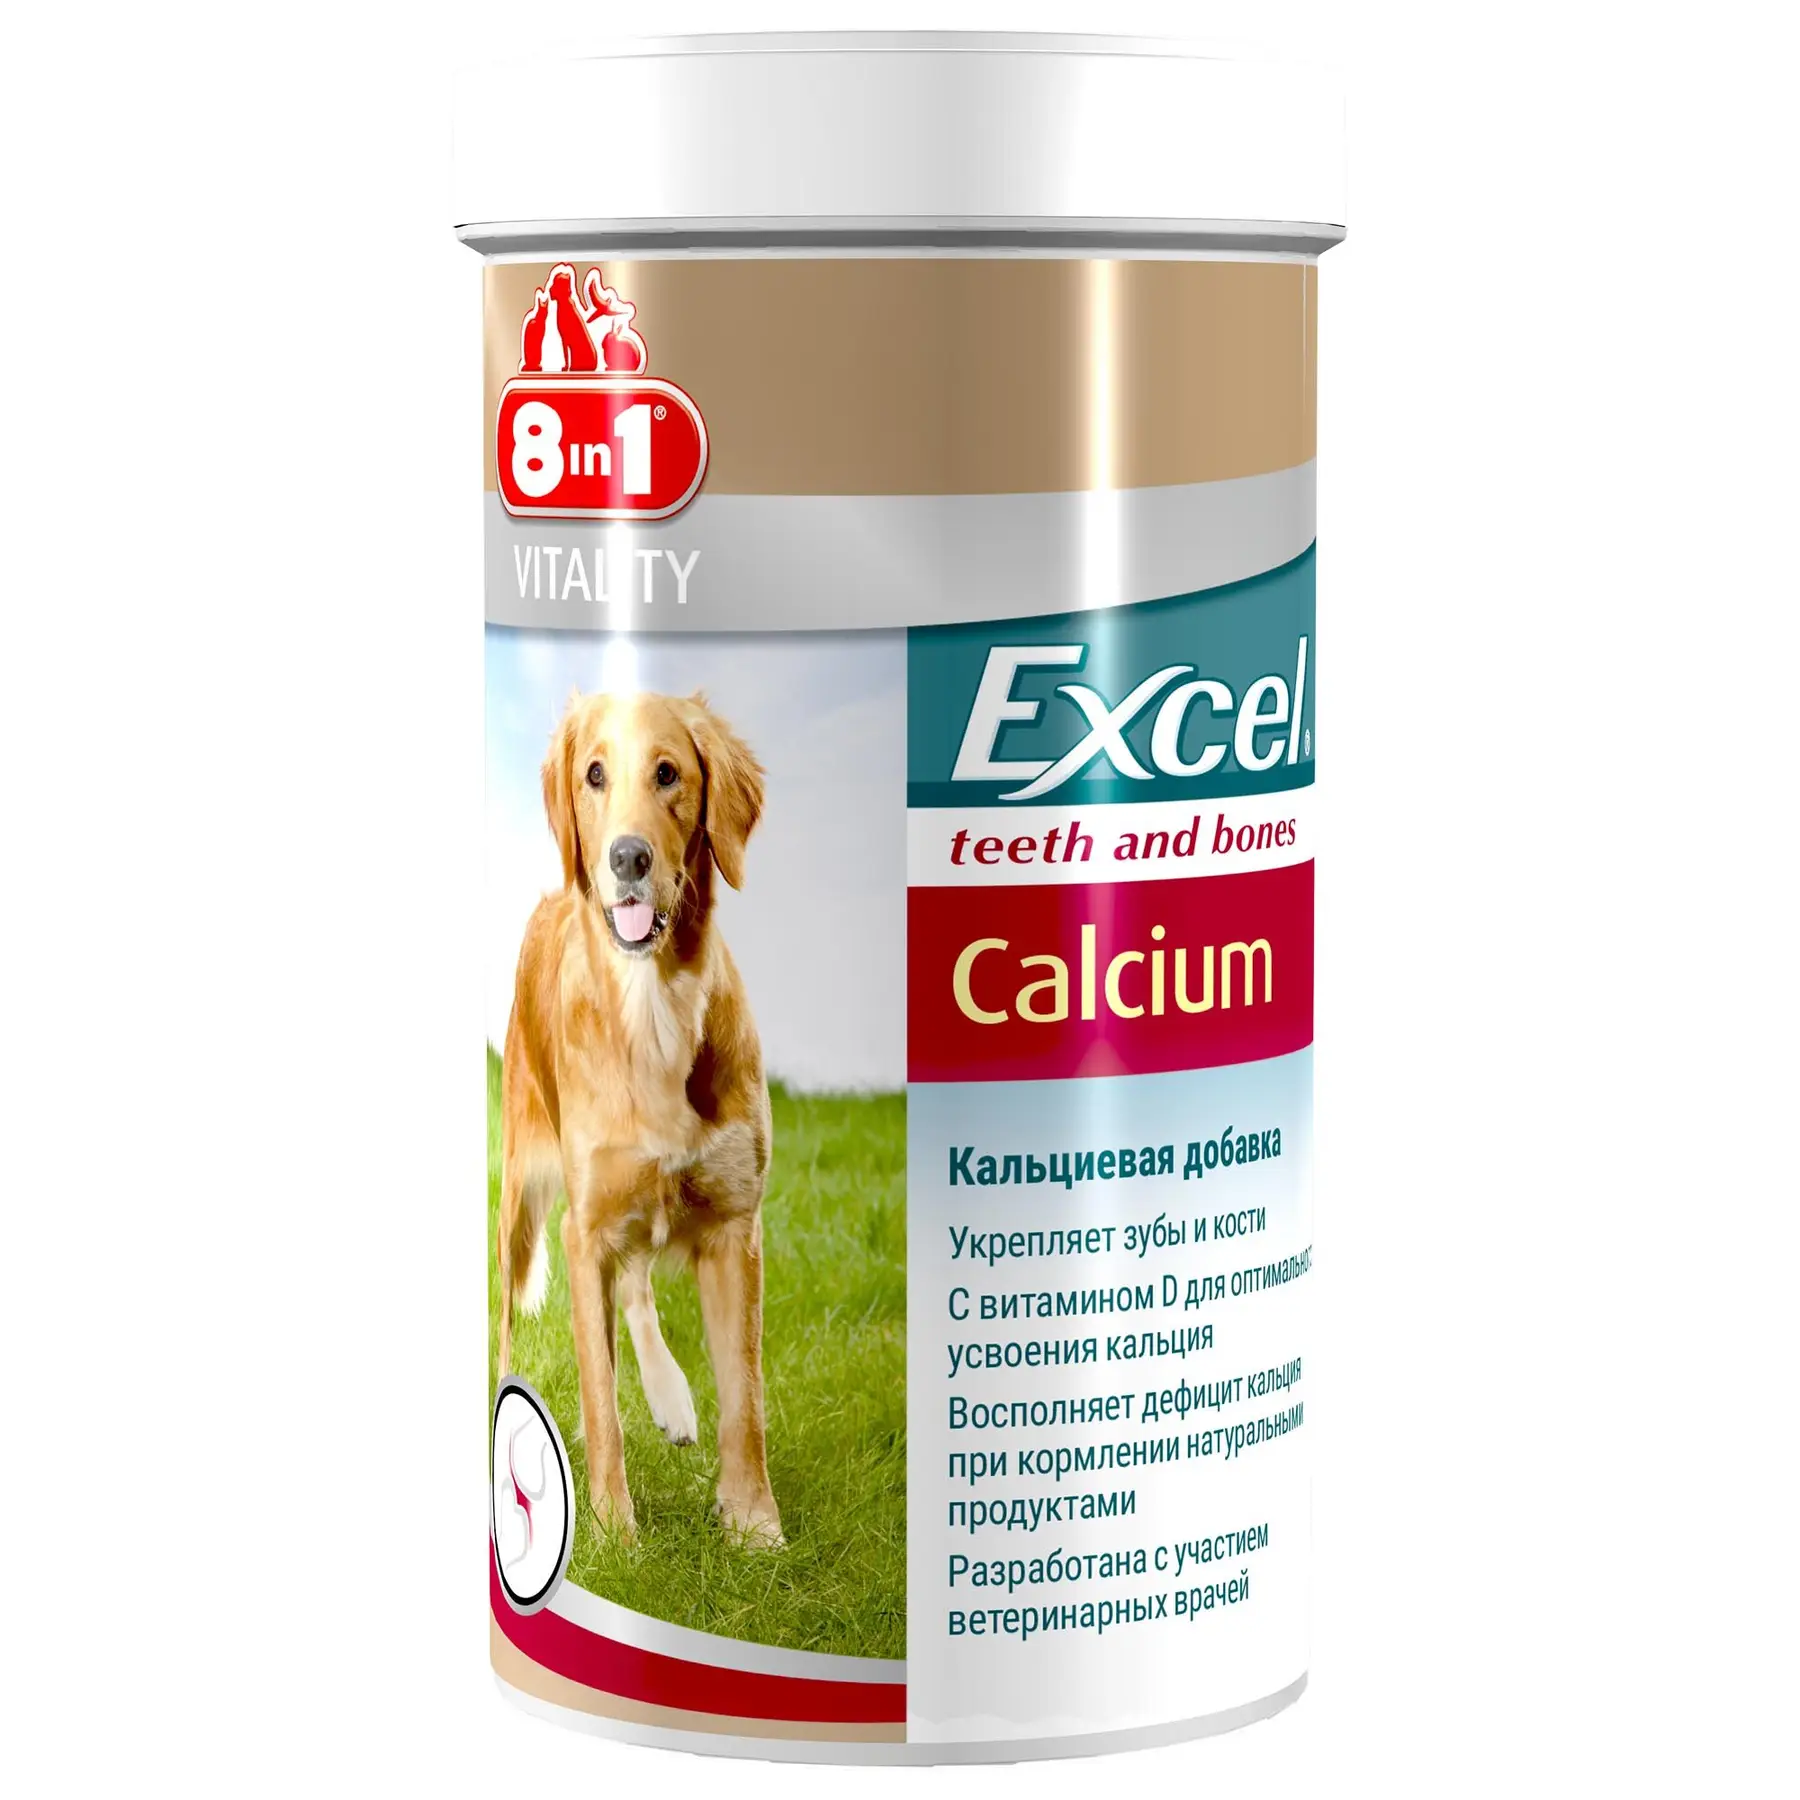 8in1 Excel Calcium кальцієва добавка для зубів та кісток собак 155 таблеток